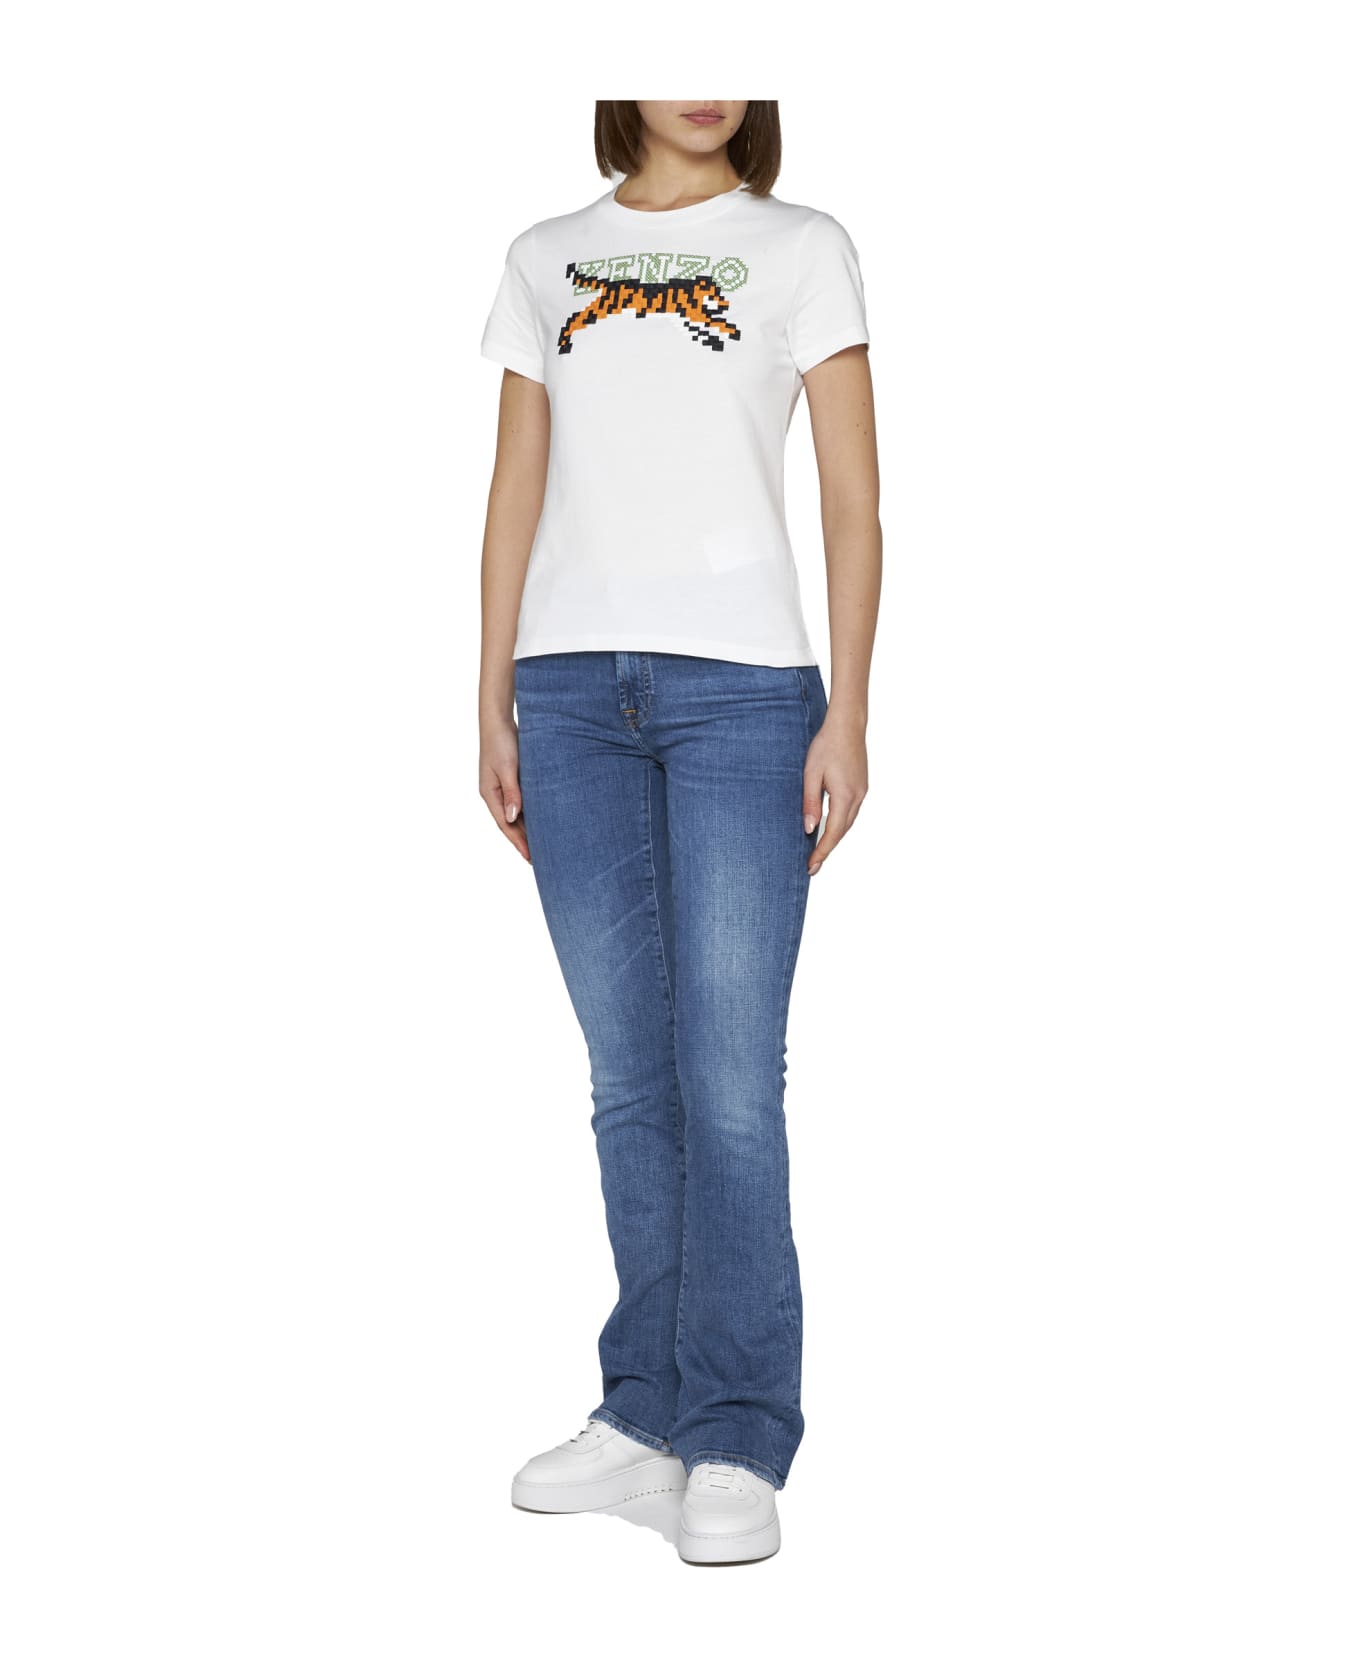 Kenzo Pixel T-shirt - White Tシャツ